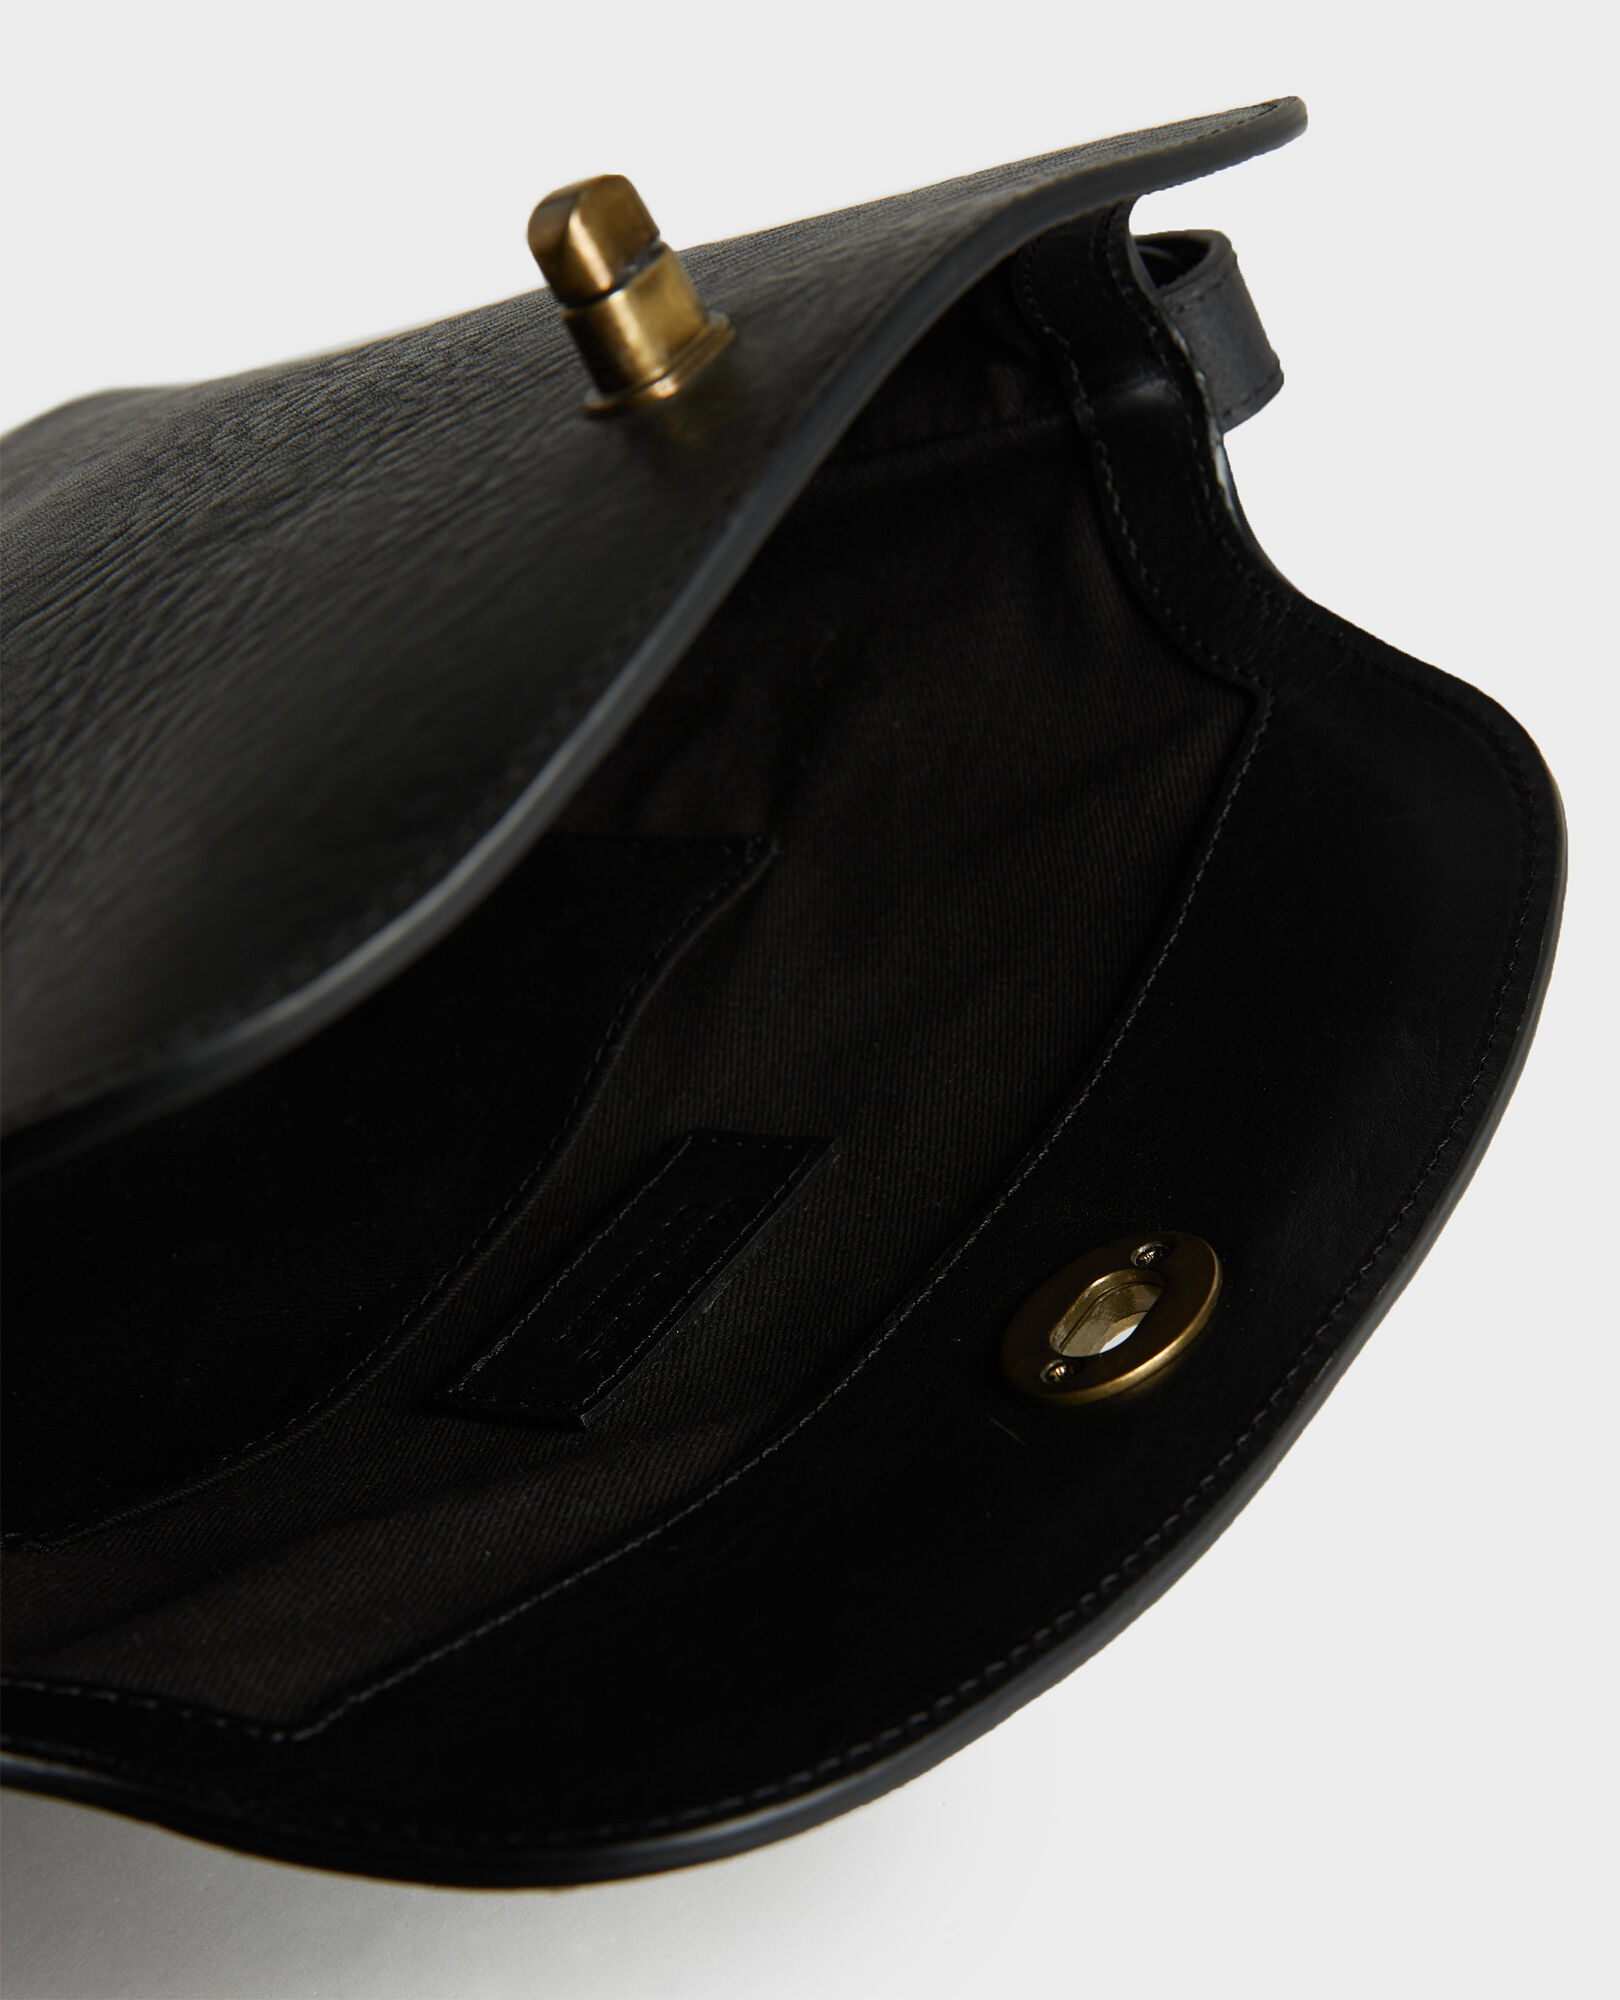  Leather handbag with short shoulder strap Black beauty Lidylle